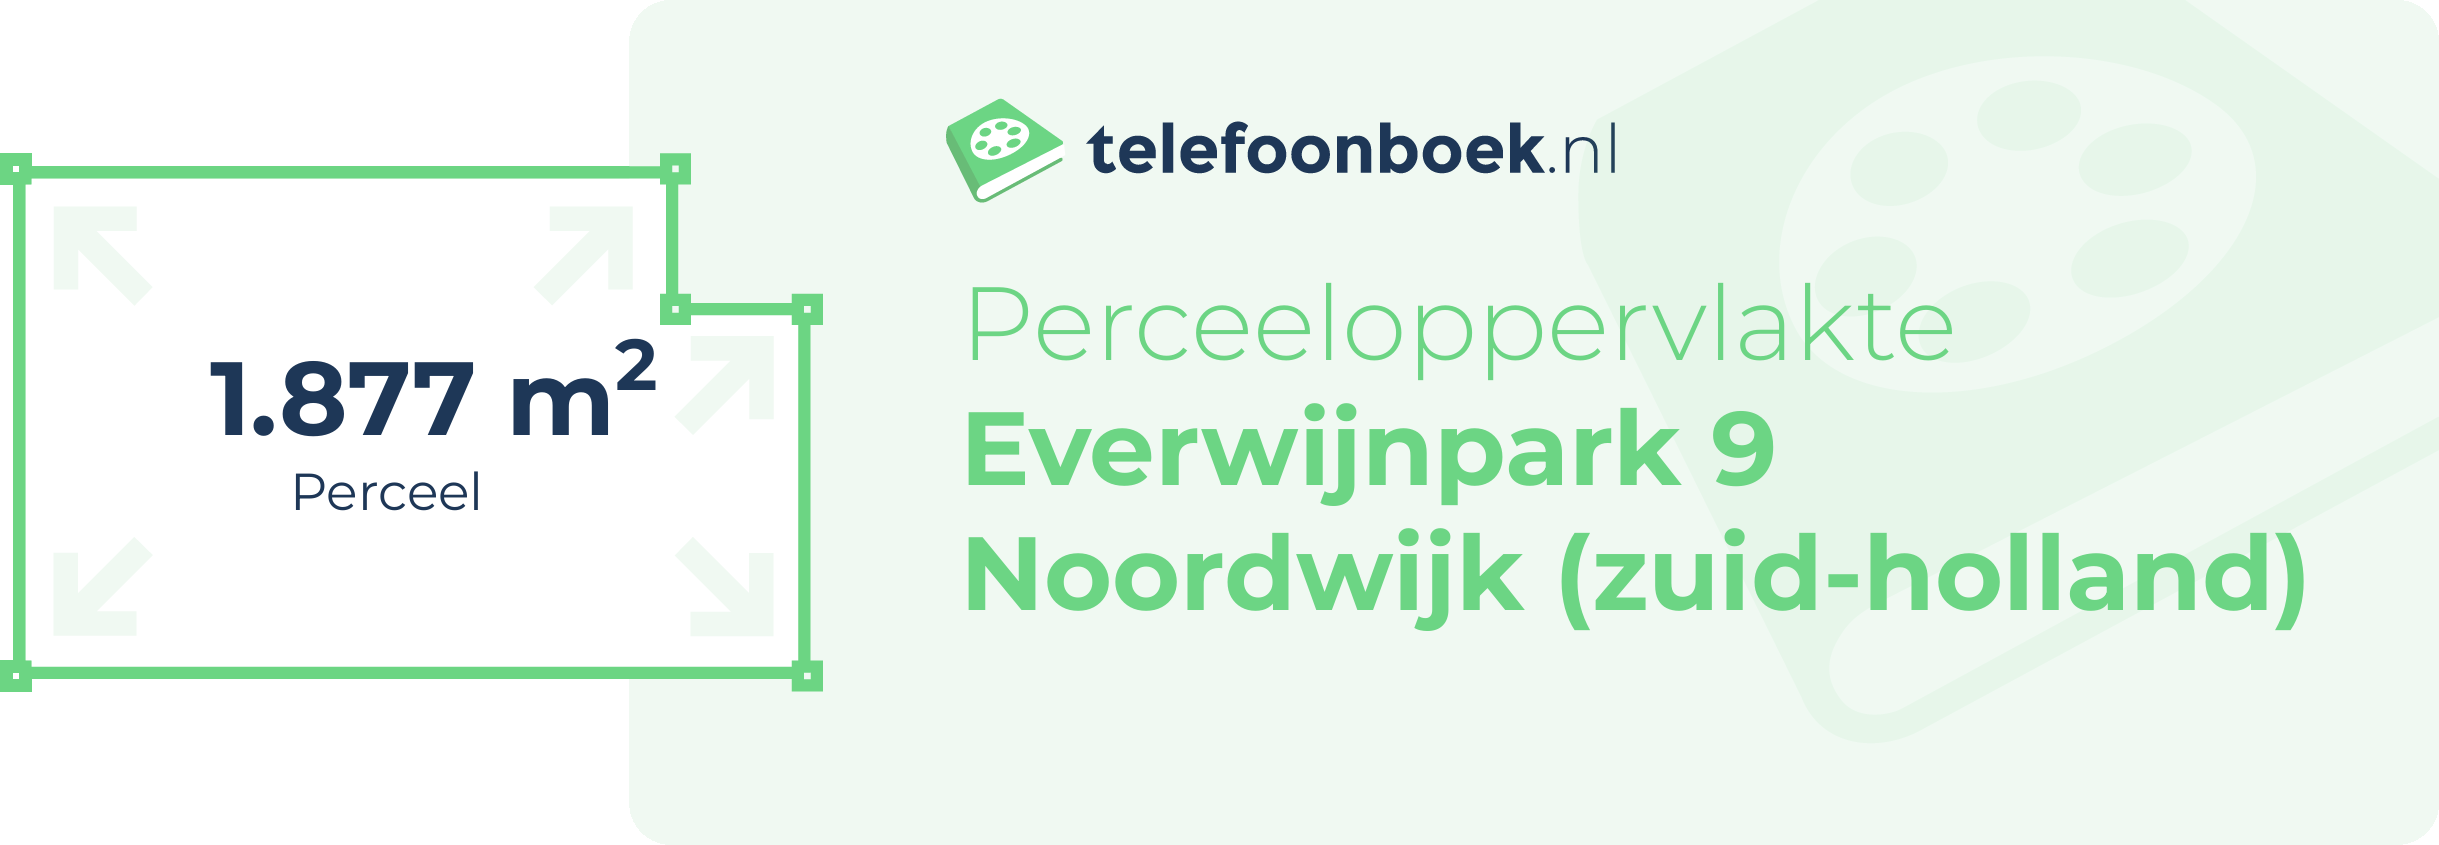 Perceeloppervlakte Everwijnpark 9 Noordwijk (Zuid-Holland)